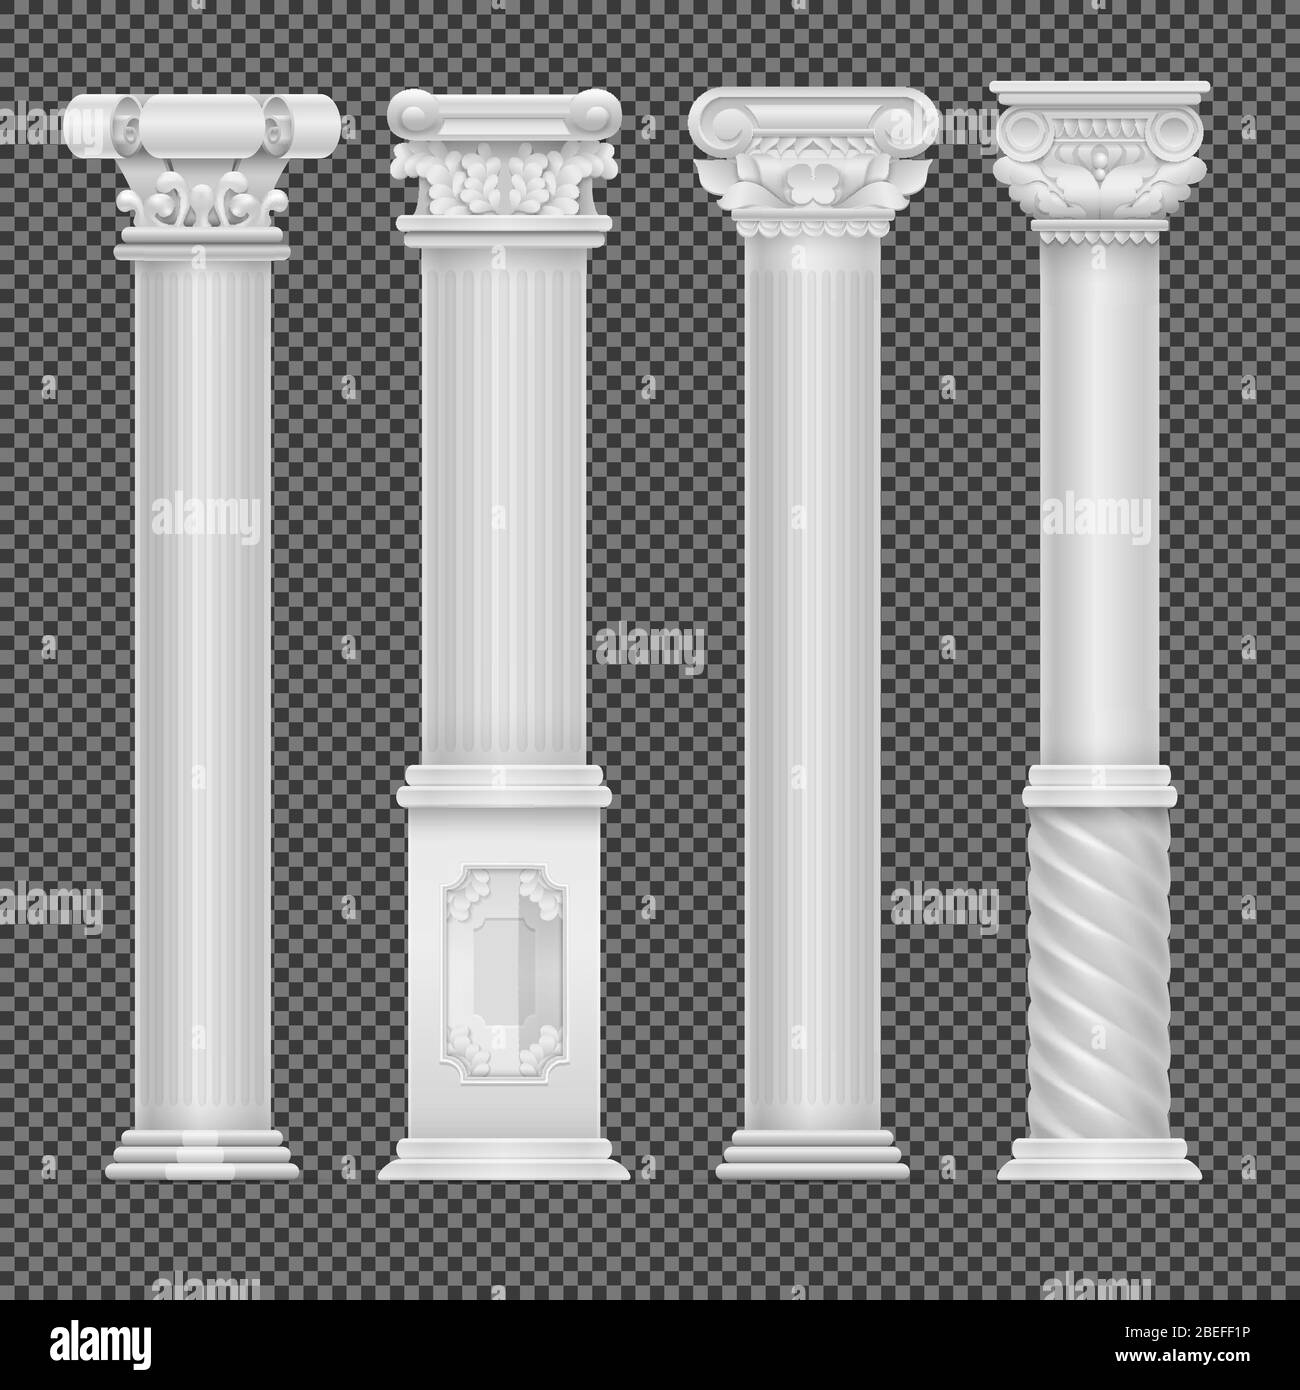 Realistische weiße antike römische Säule isoliert auf transparentem Hintergrund. Säule und Säule klassisch, Vektorgrafik Stock Vektor